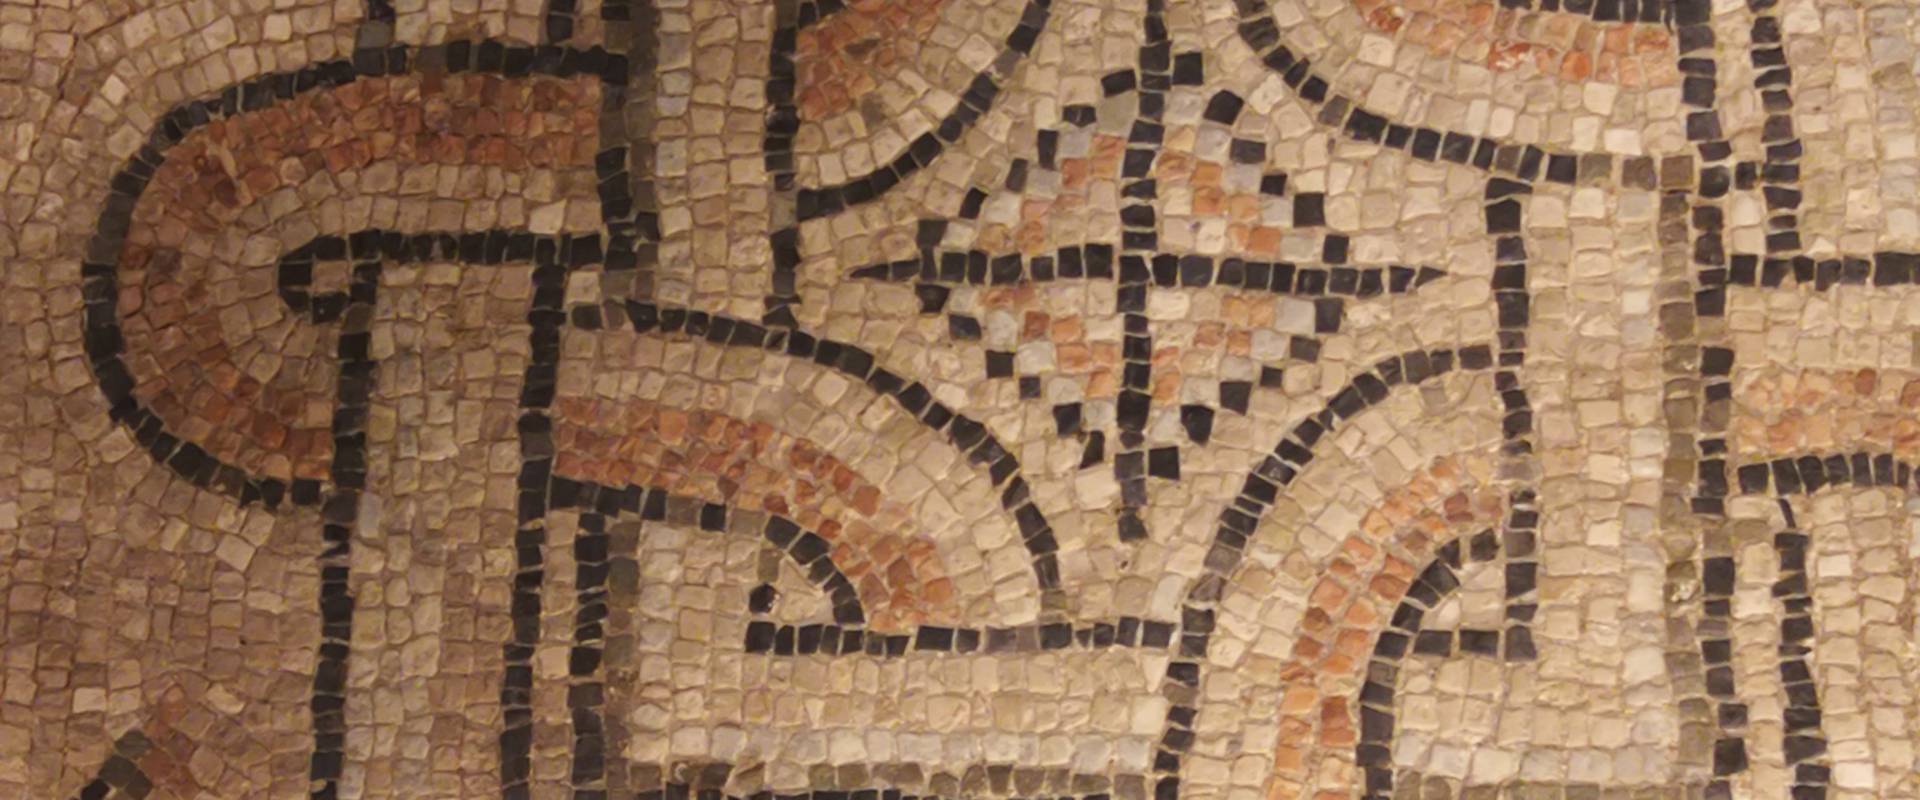 Domus dei tappeti di pietra - particolare foto di LadyBathory1974